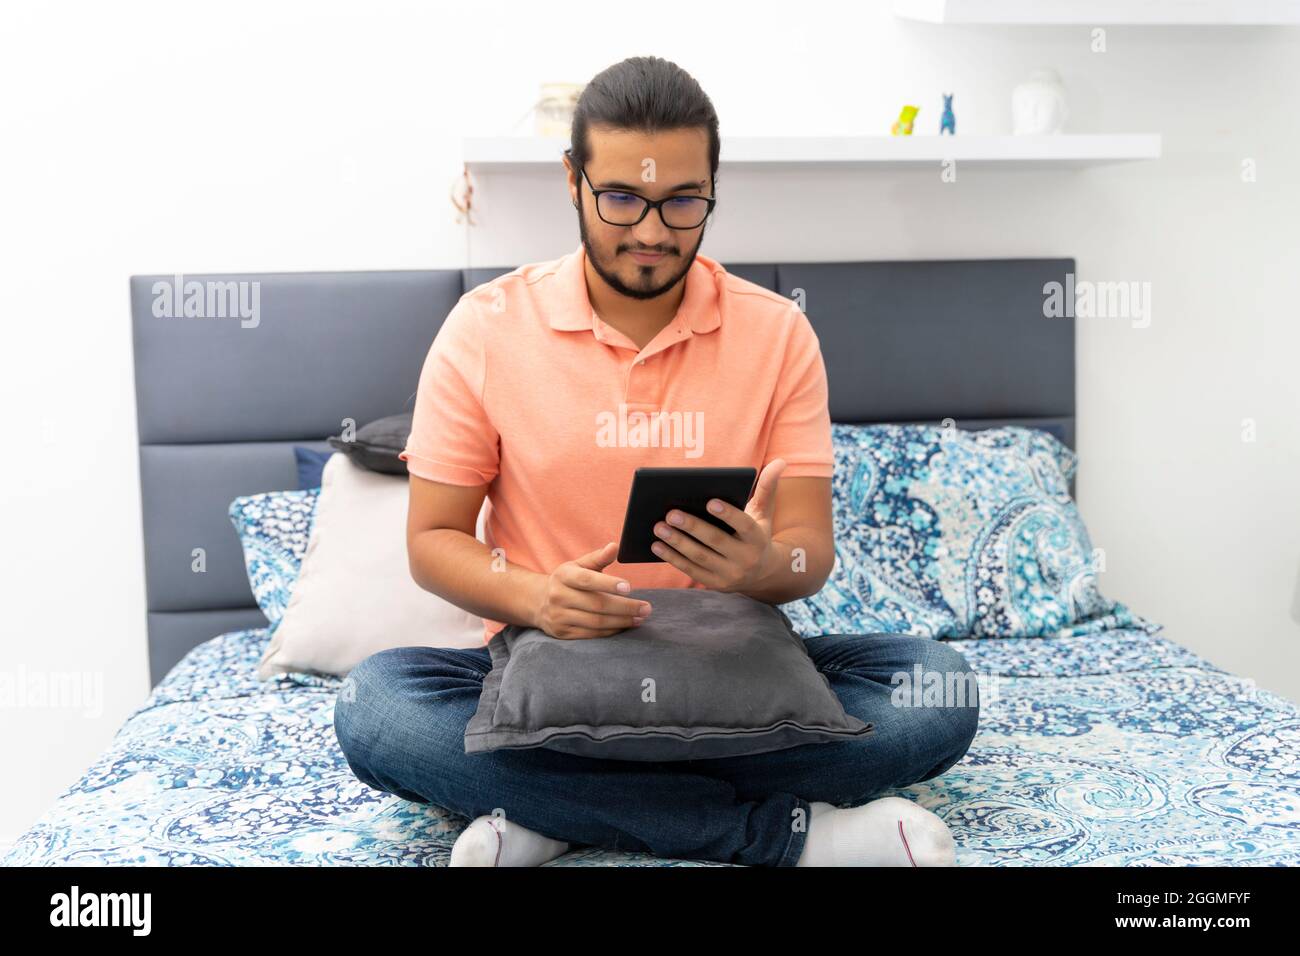 Junger Mann, der auf dem Bett sitzt und auf einem E-Reader liest Stockfoto